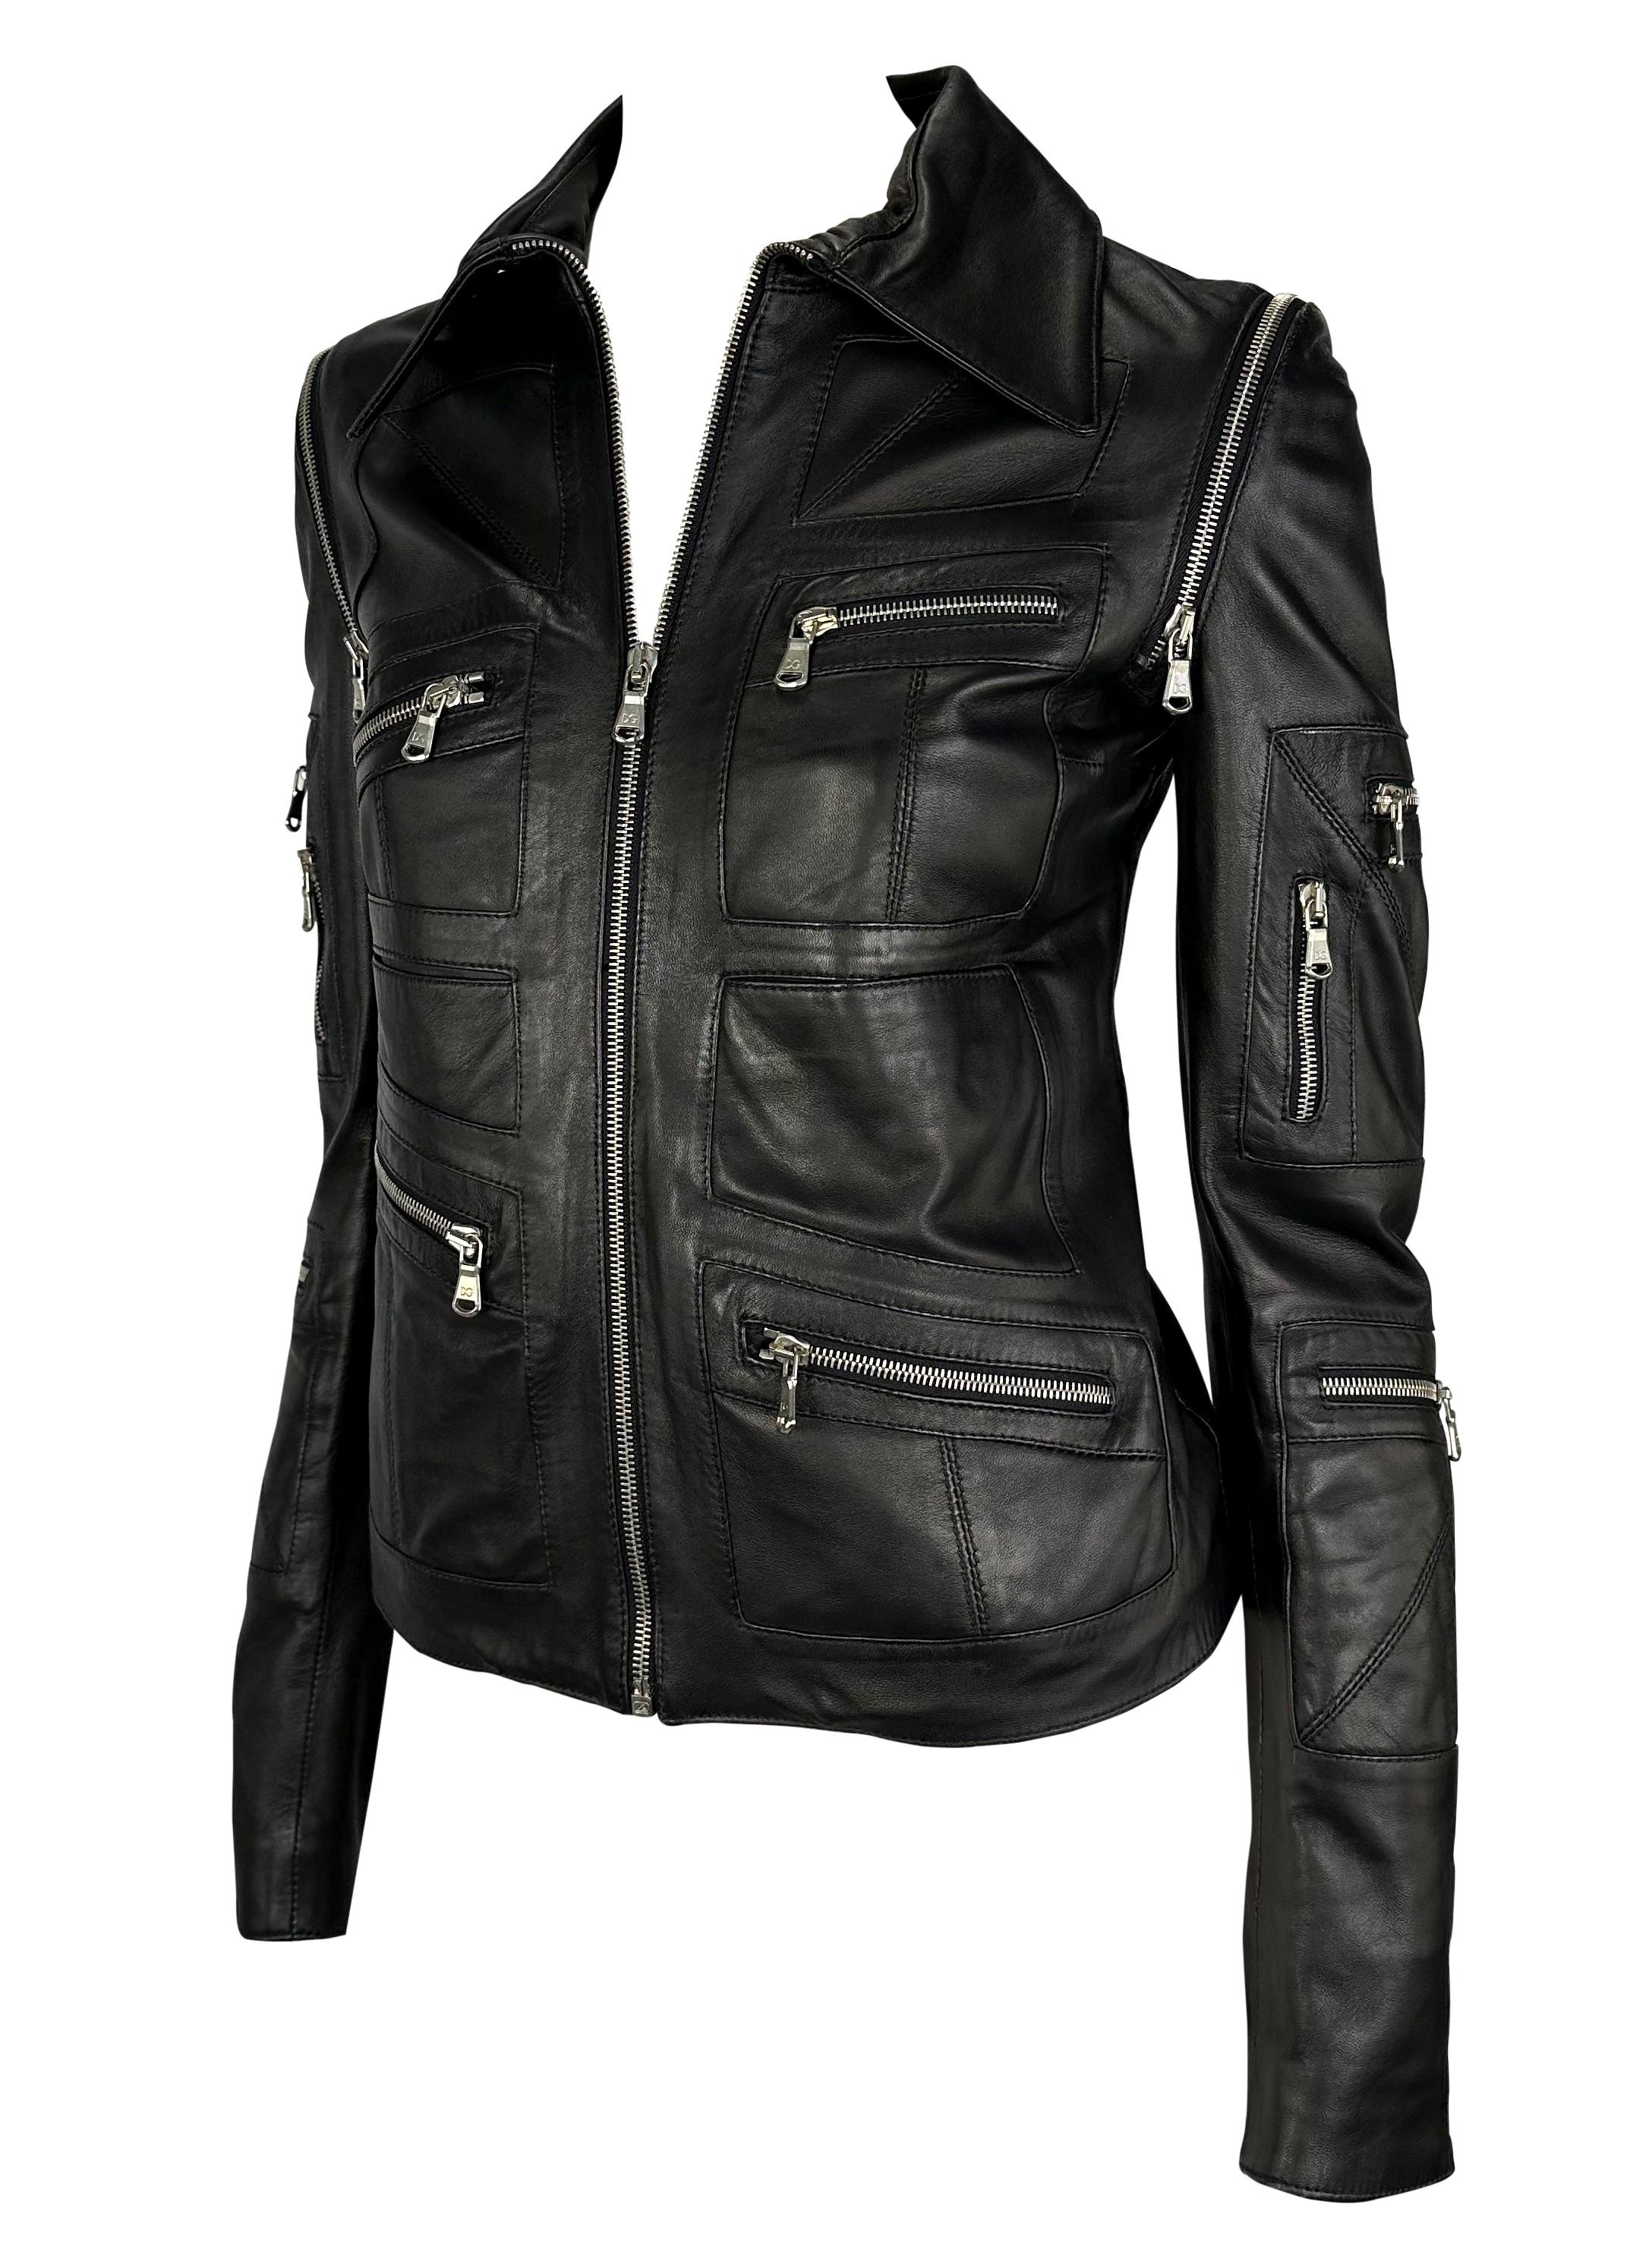 Nous vous présentons une fabuleuse veste moto en cuir Dolce and Gabbana avec fermeture éclair. Datant du début des années 2000, cette incroyable veste est couverte de poches et de fermetures éclair. Toutes les fermetures à glissière de cette veste